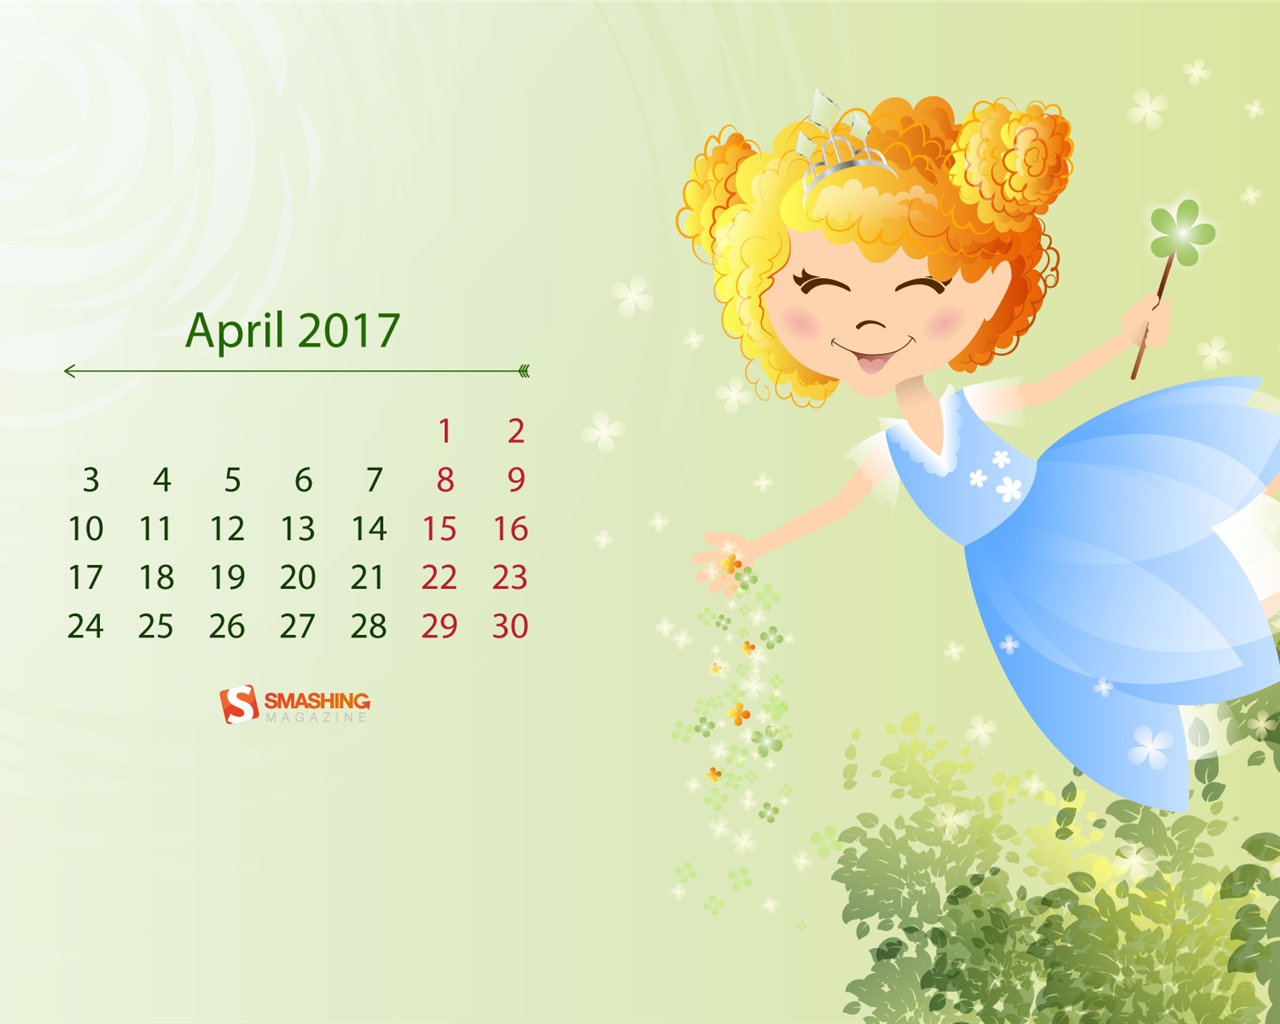 April 2017 calendar wallpaper (2) #11 - 1280x1024